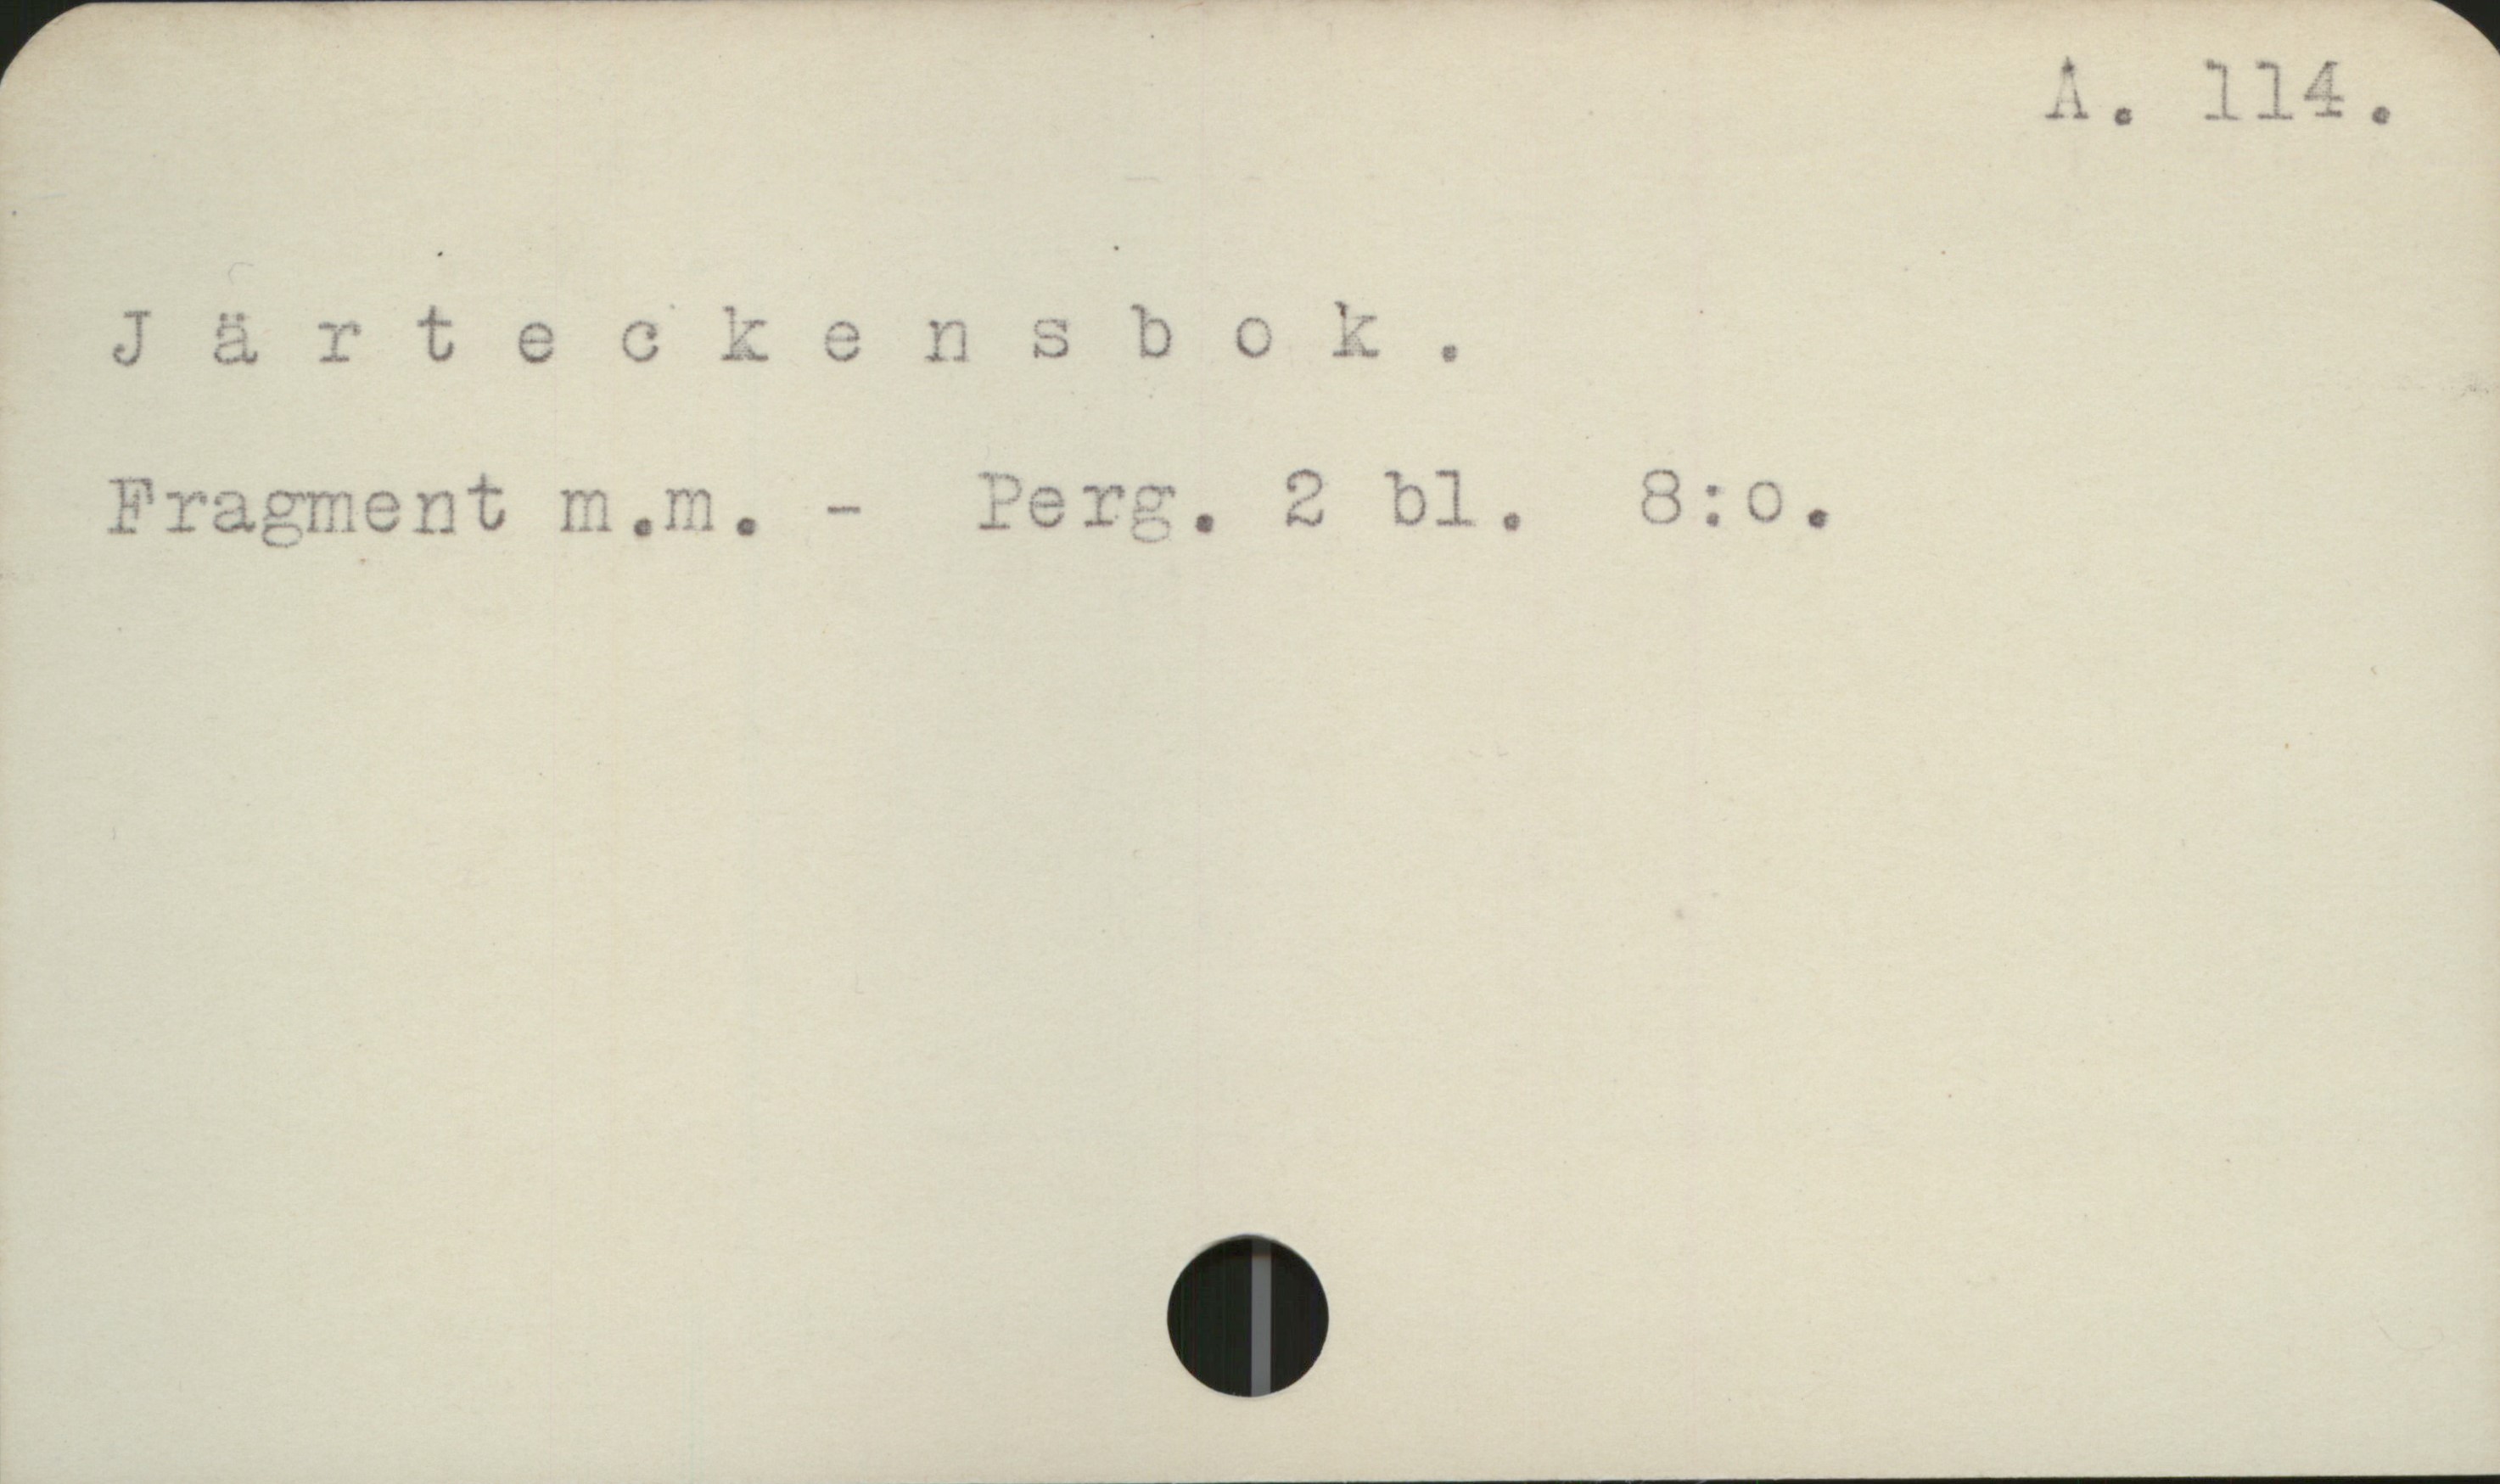 Järteckensbok A 114

Järteckensbok

Fragment m.m.   Perg.  2 bl.    8:o